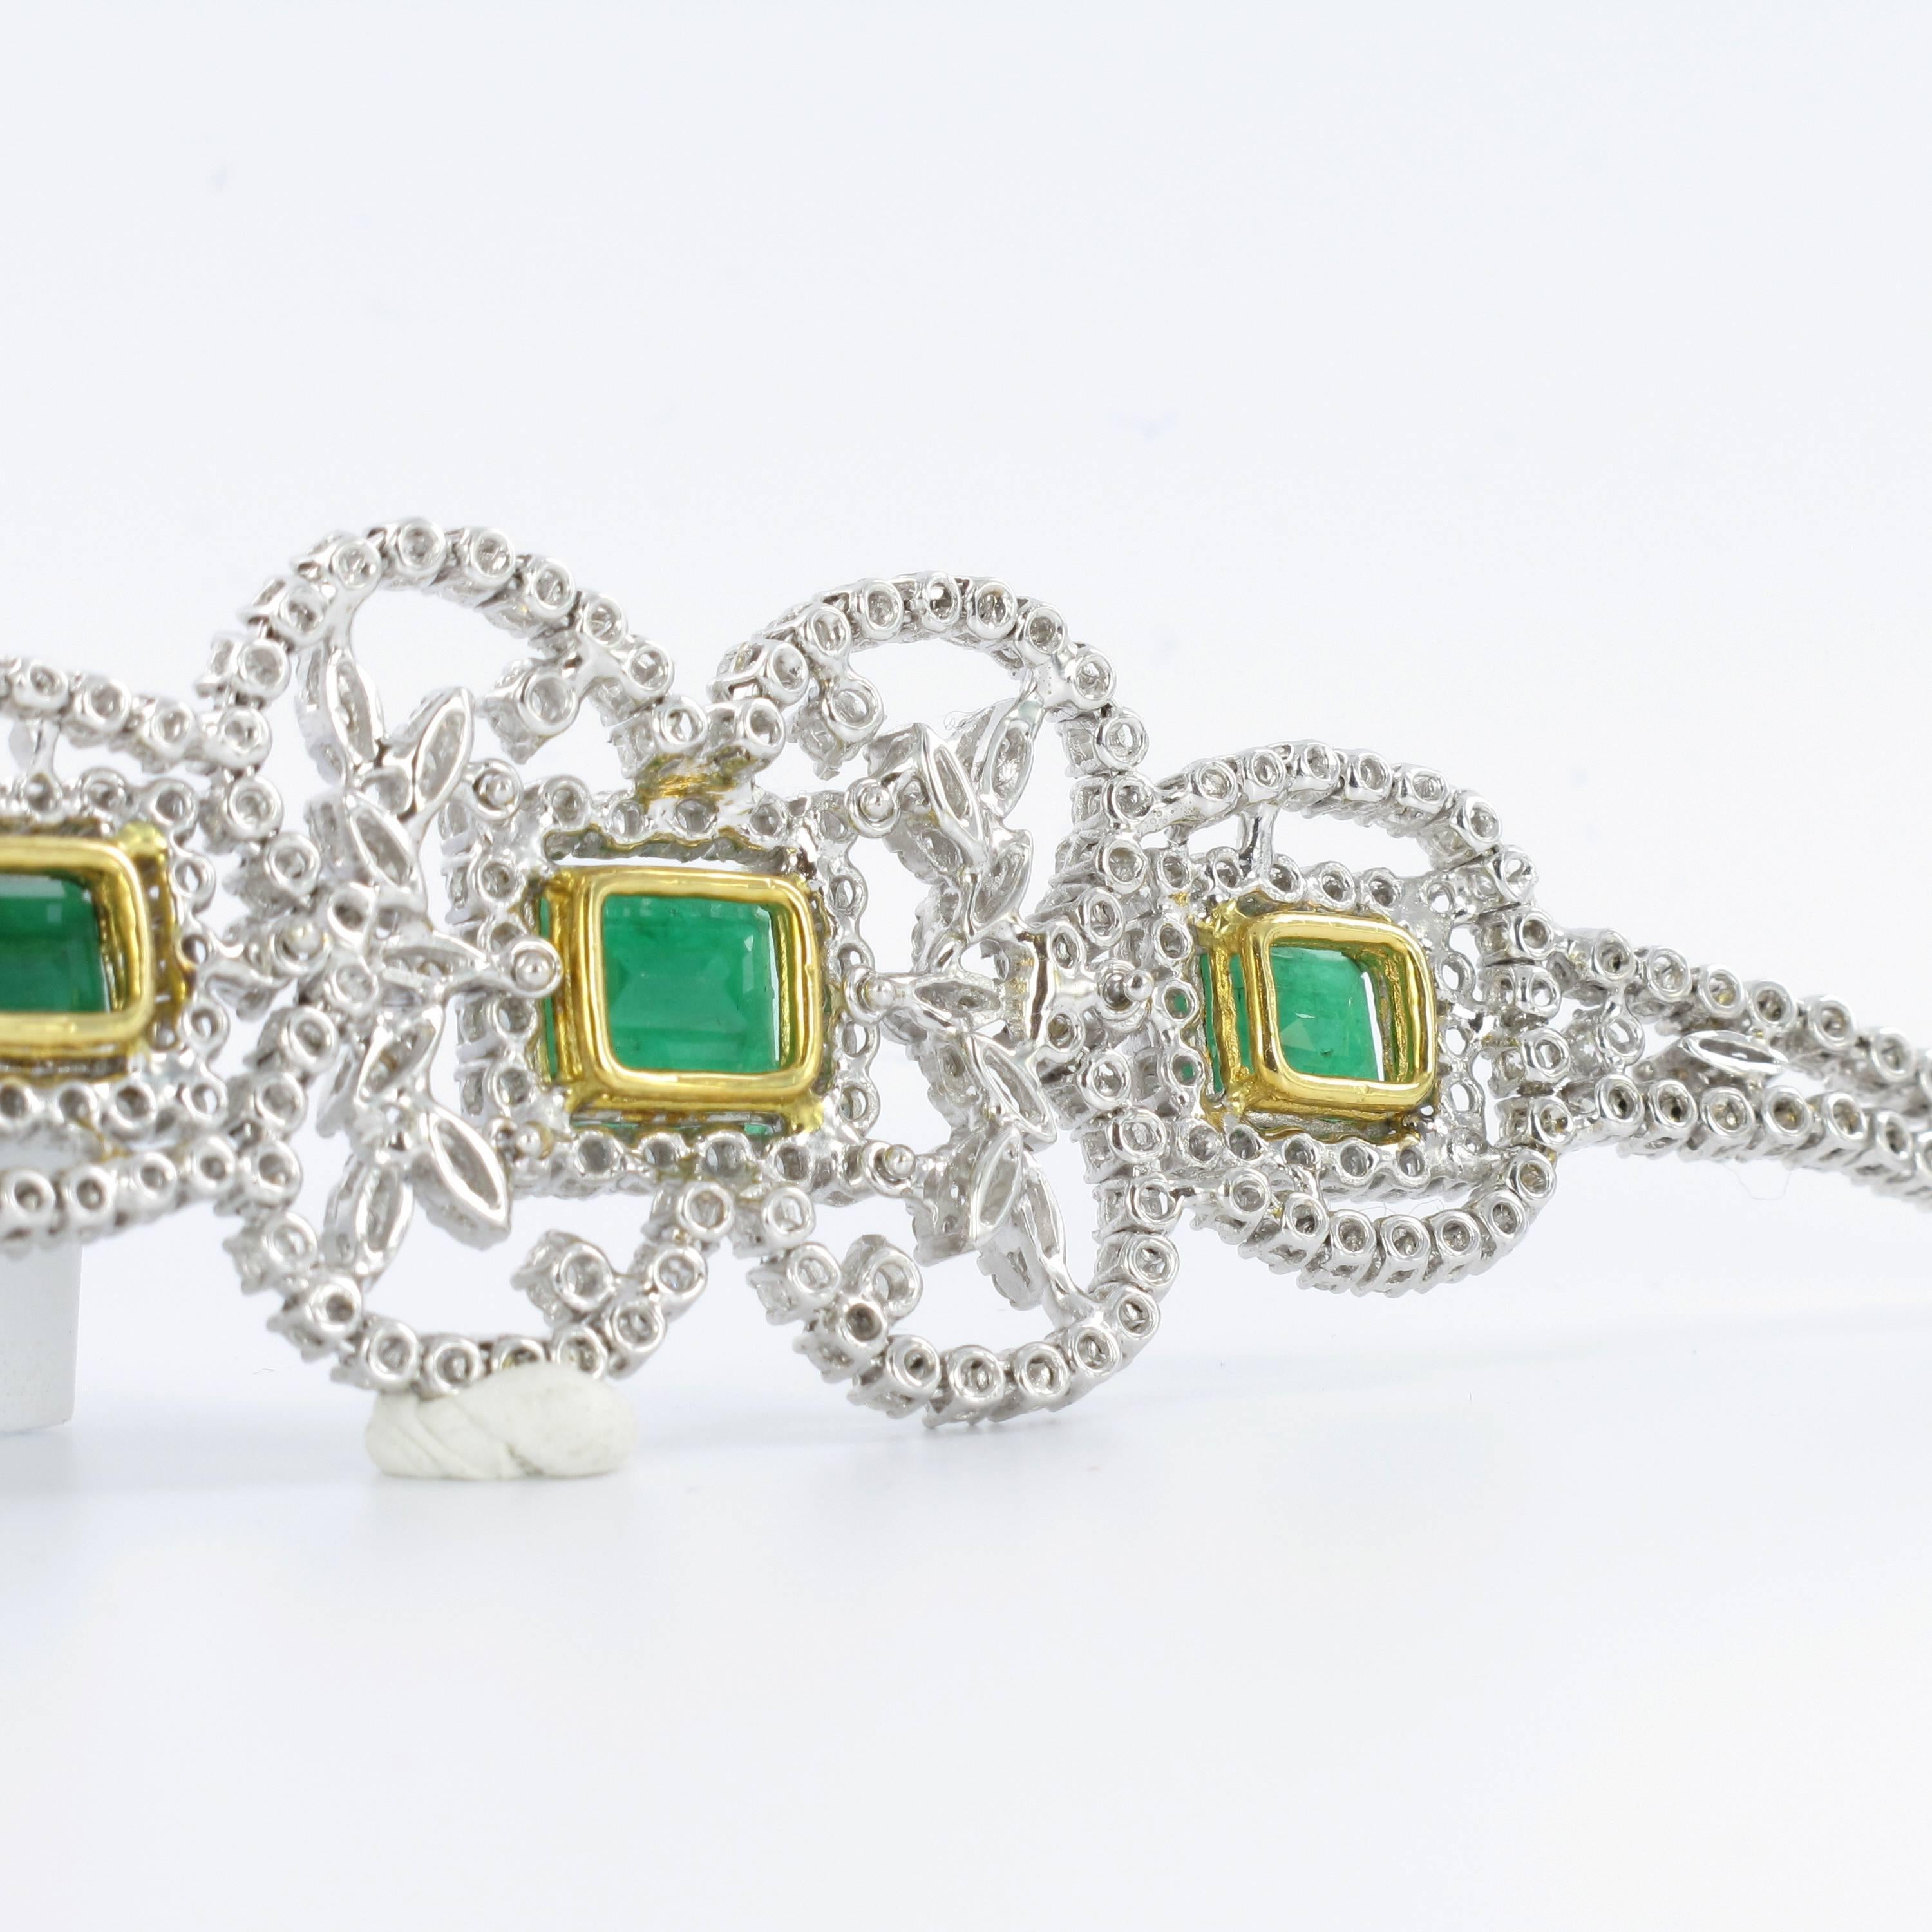 Emerald Cut Impressive Emerald and Diamond Parure in White Gold